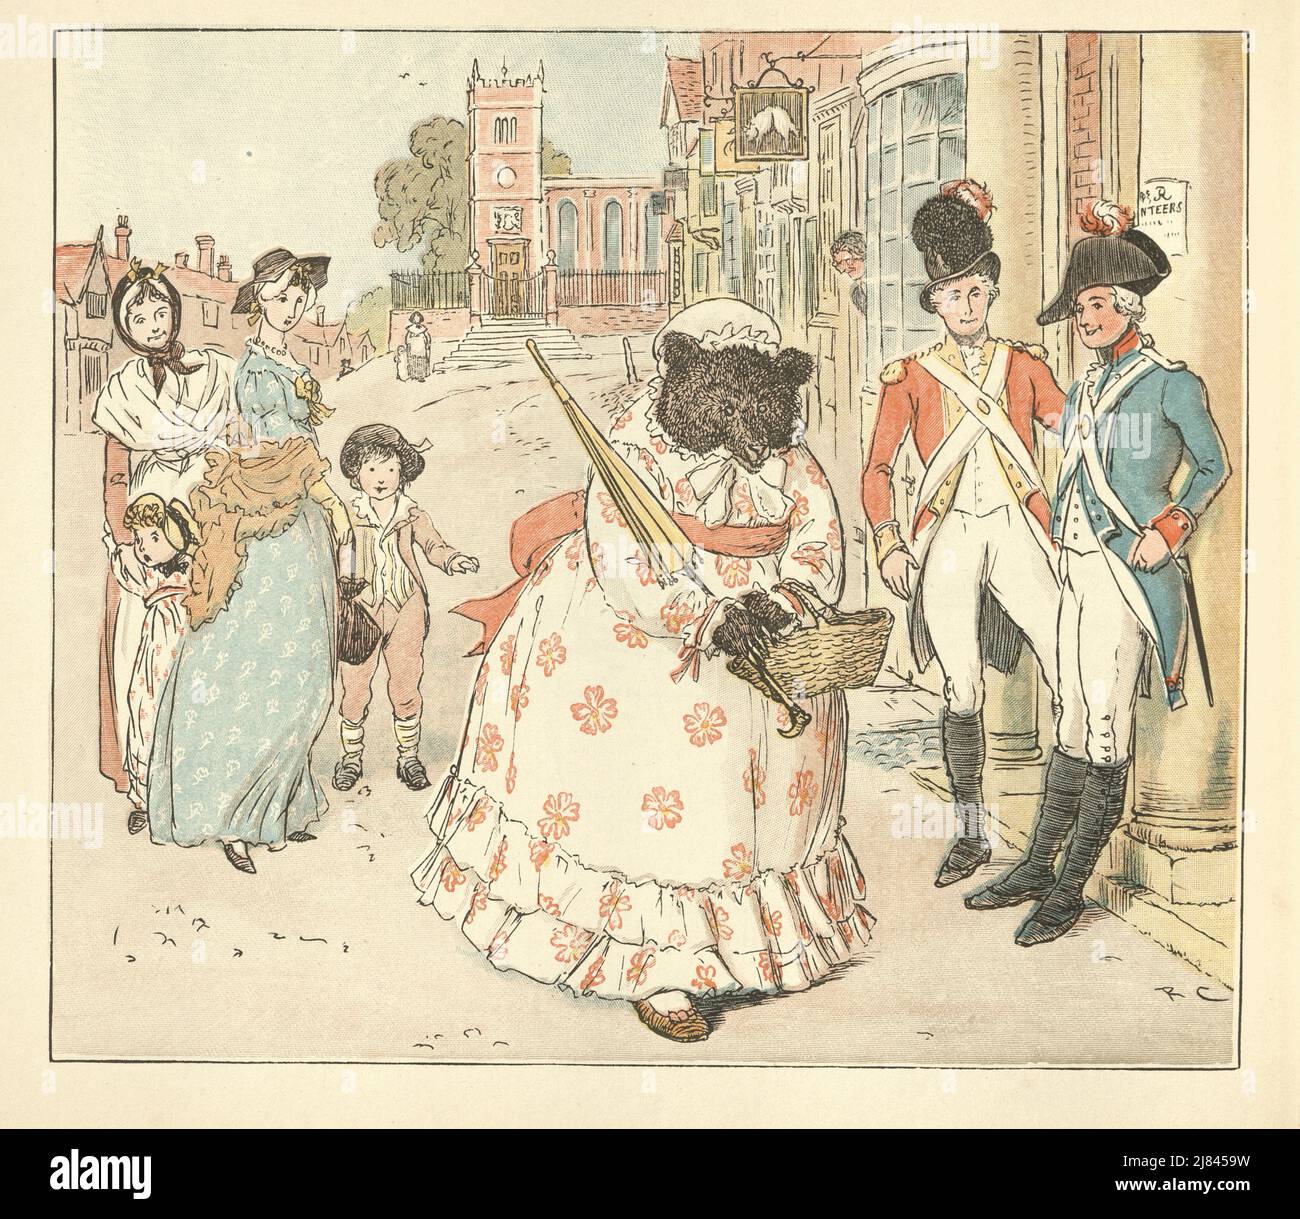 Vintage-Illustration der Szene aus dem Großen Panjandrum selbst, illustriert von Randolph Caldecott. Tragen Sie sich in ein Kleid gekleidet und gehen Sie die Straße entlang Stockfoto